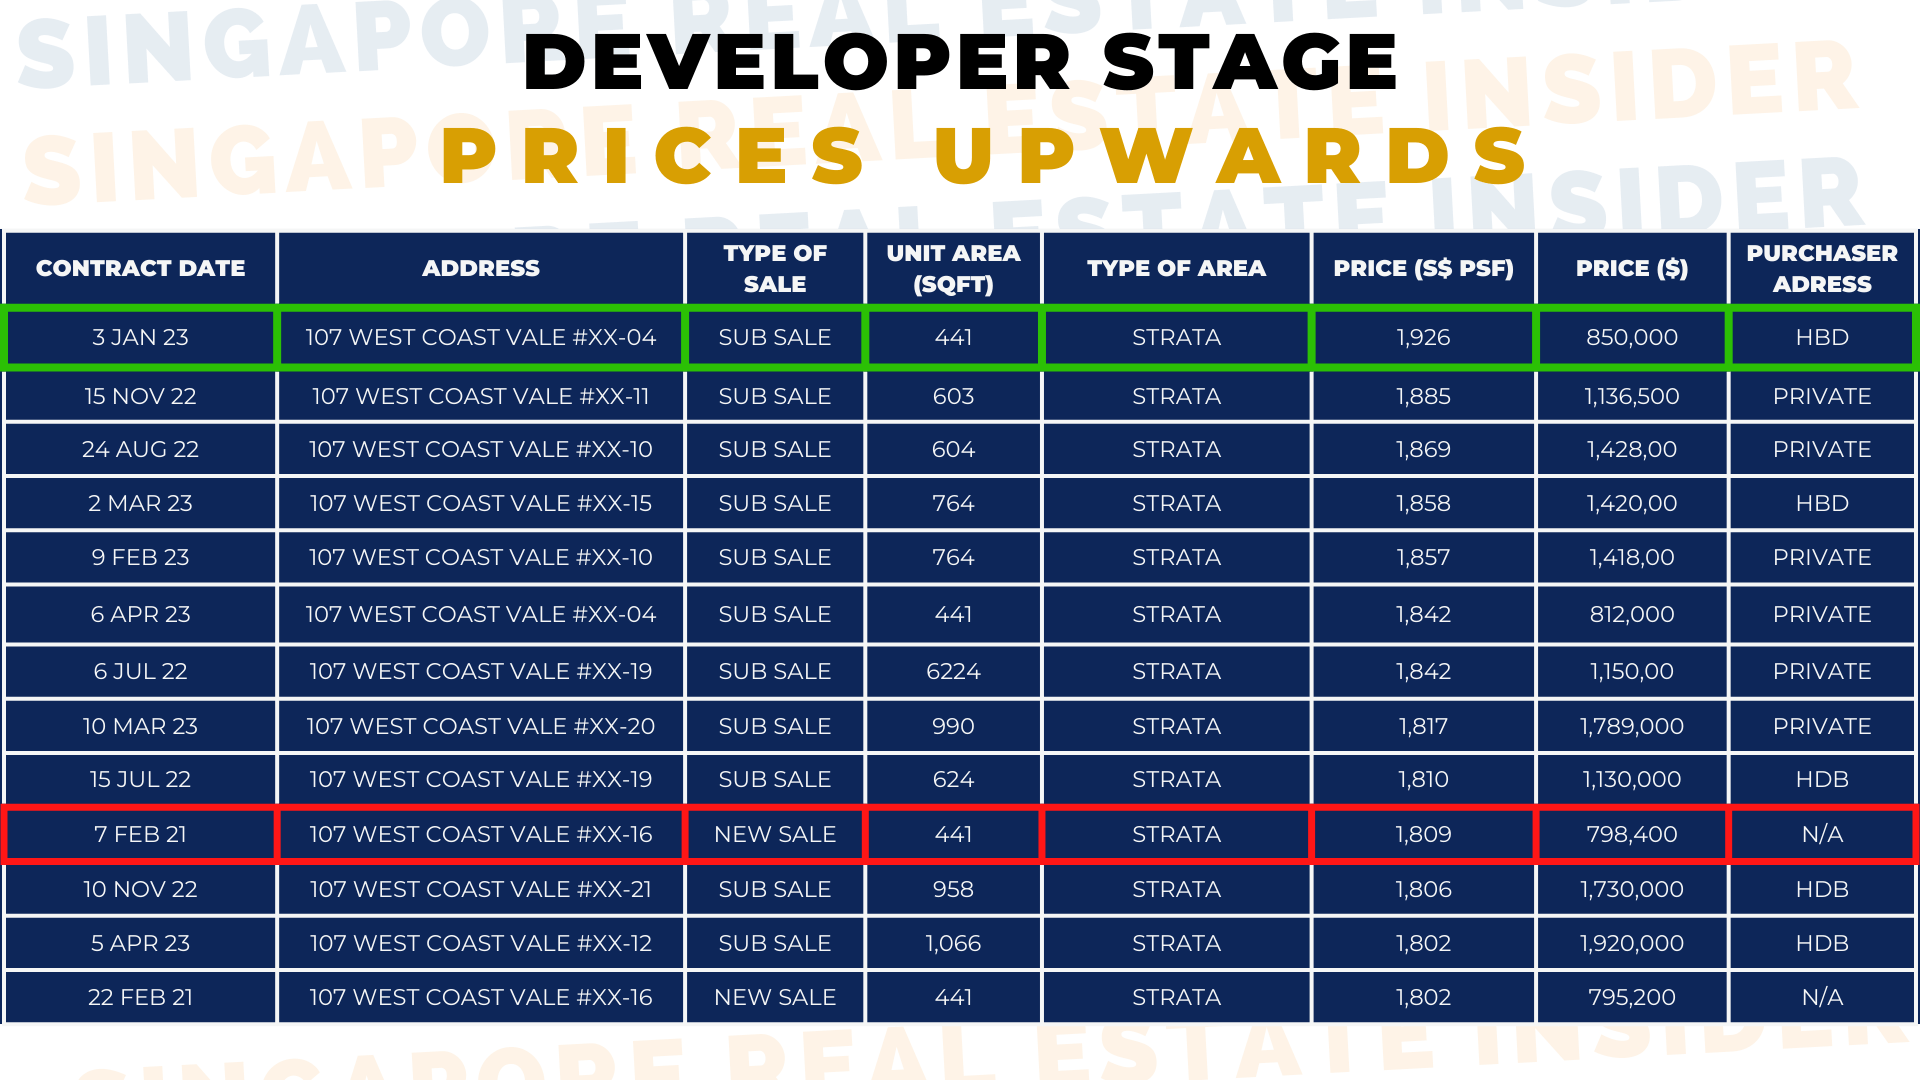 Developer Stage Prices Upwards